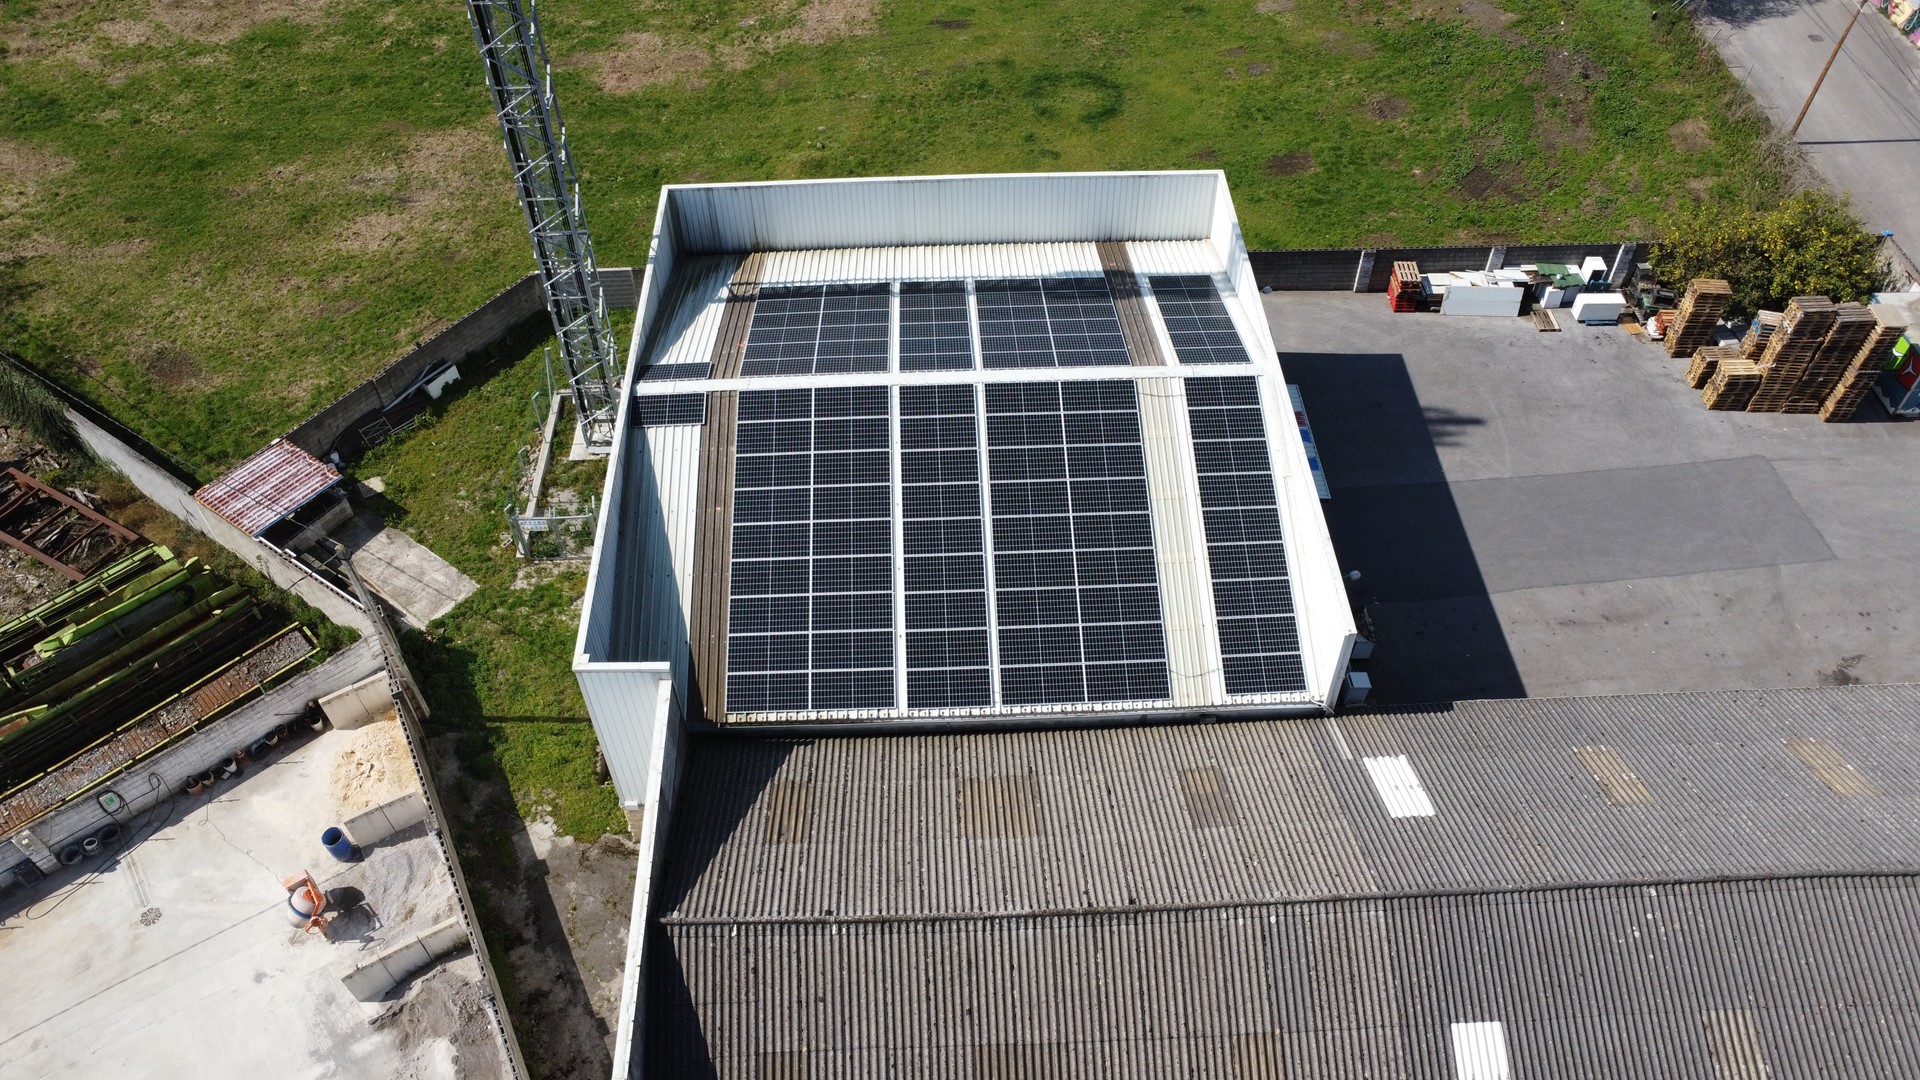 Autoconsumo fotovoltaico en Cantabria